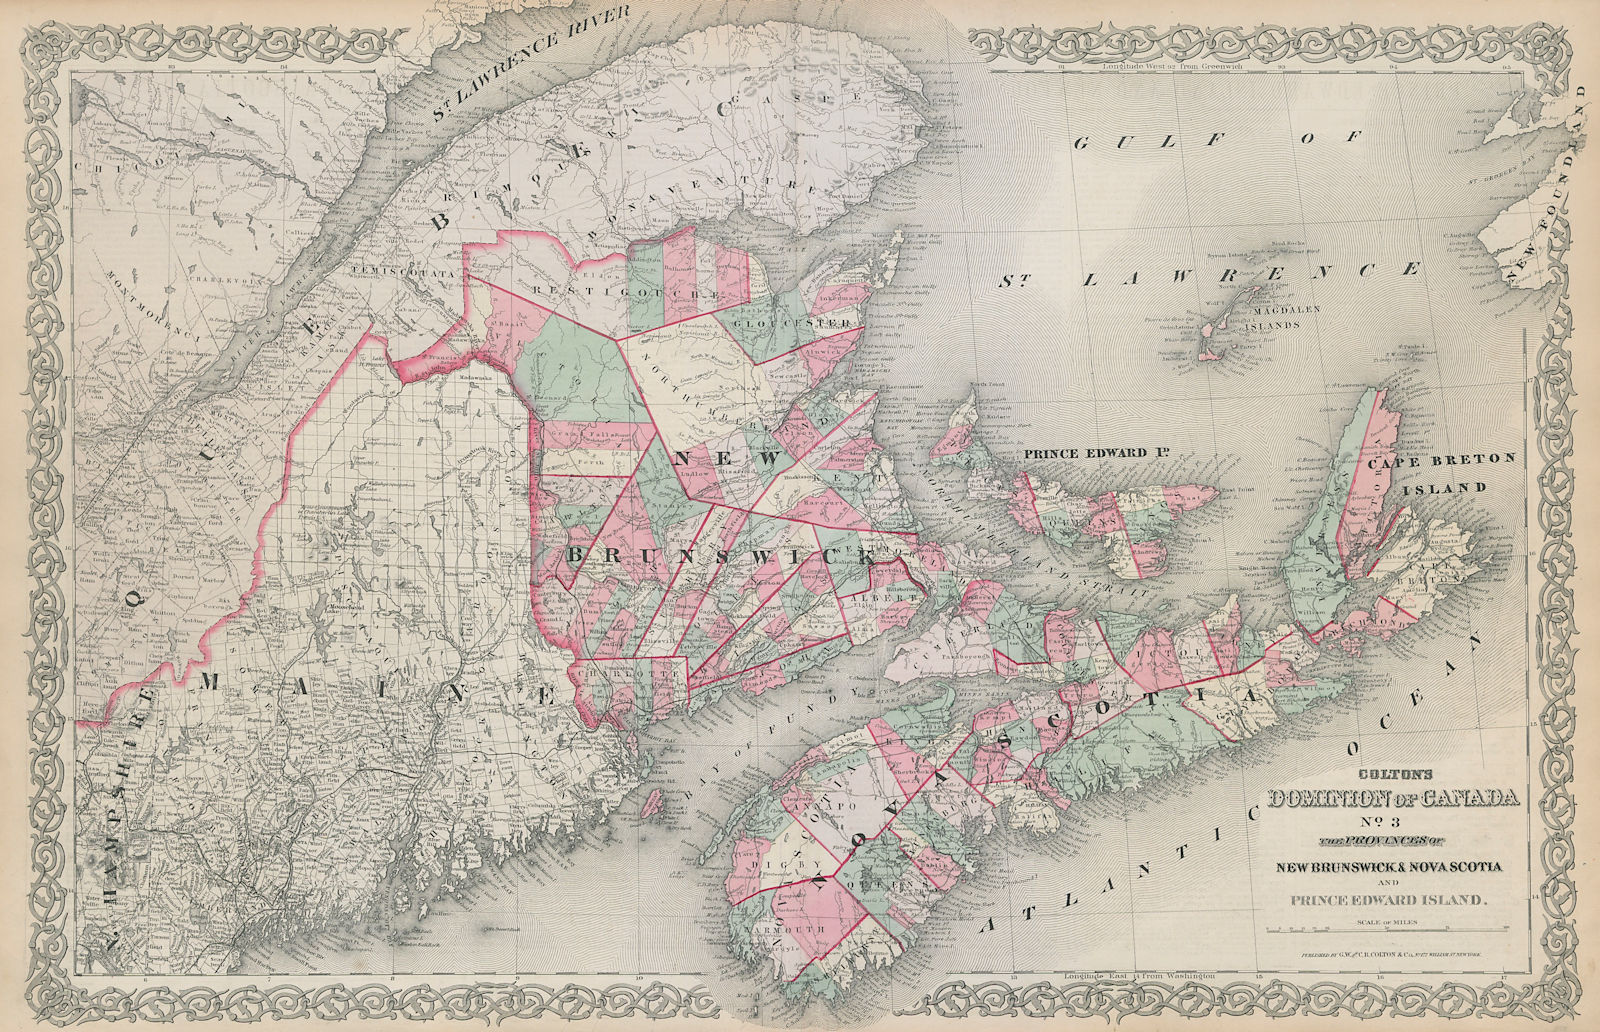 Associate Product Colton's Dominion of Canada No.3 New Brunswick, Nova Scotia & PEI 1869 old map